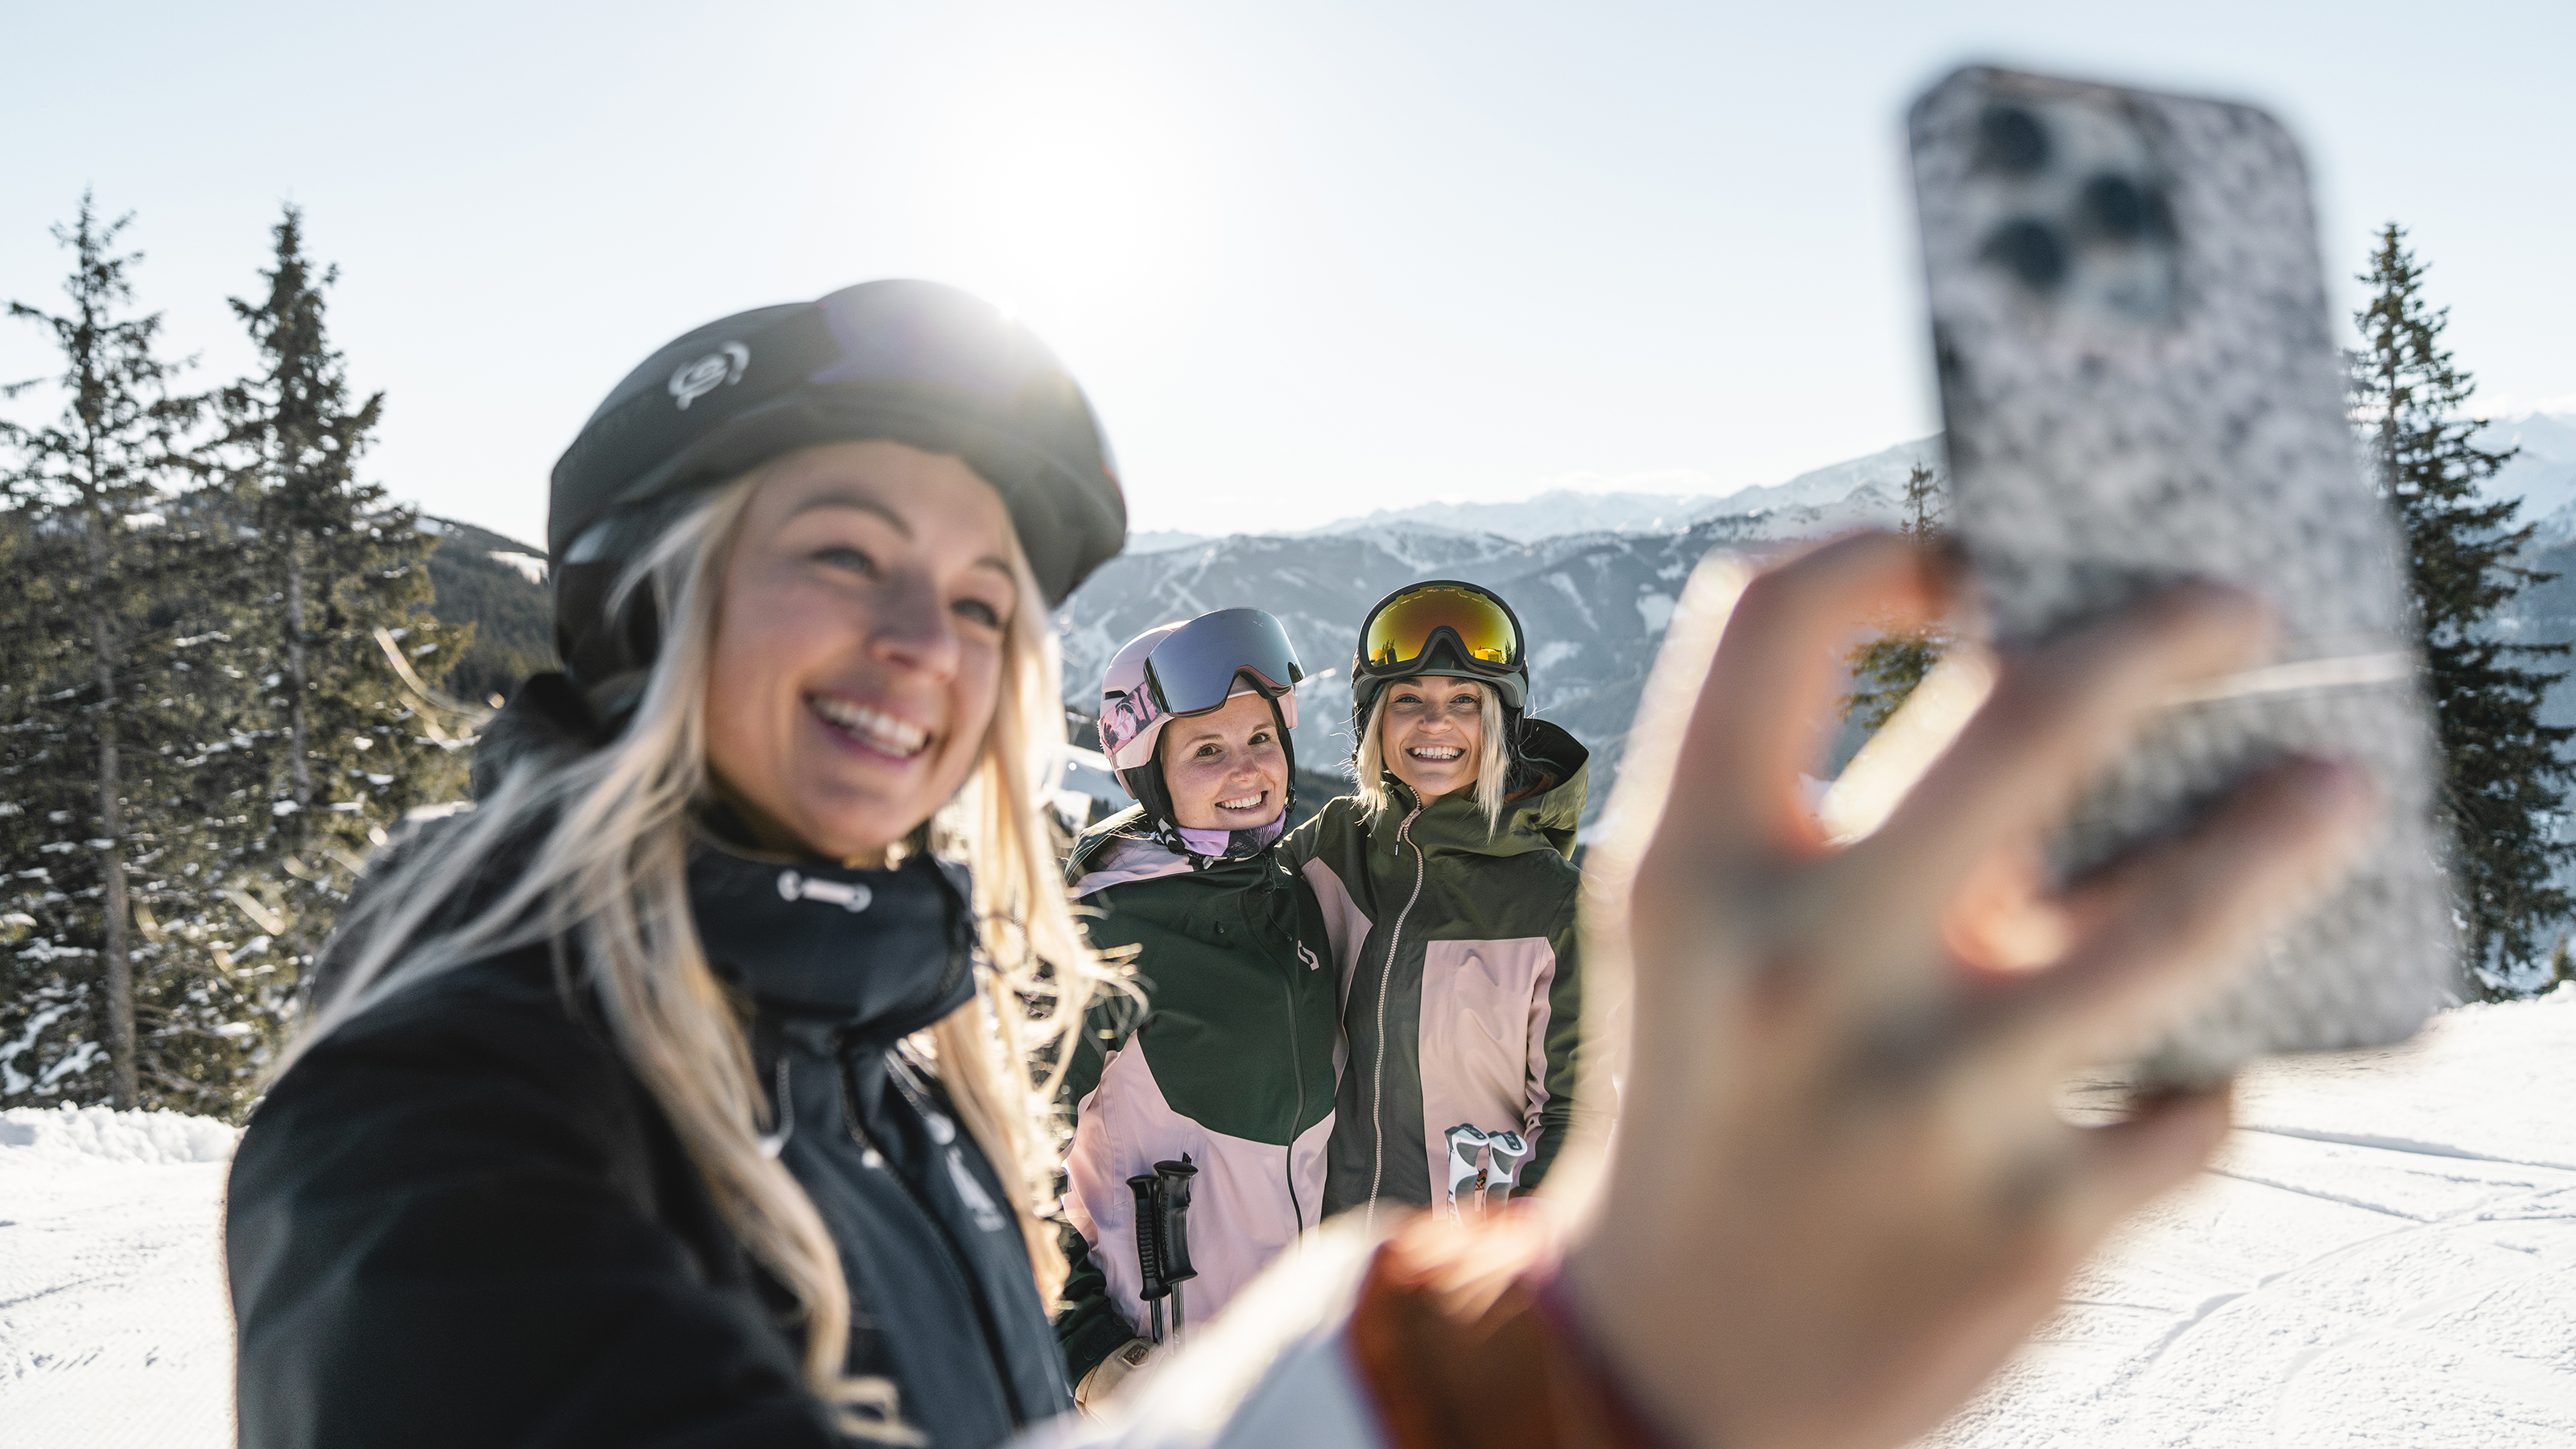 Drei Personen in einer Winterlandschaft. Person im Vordergrund macht ein Selfie.